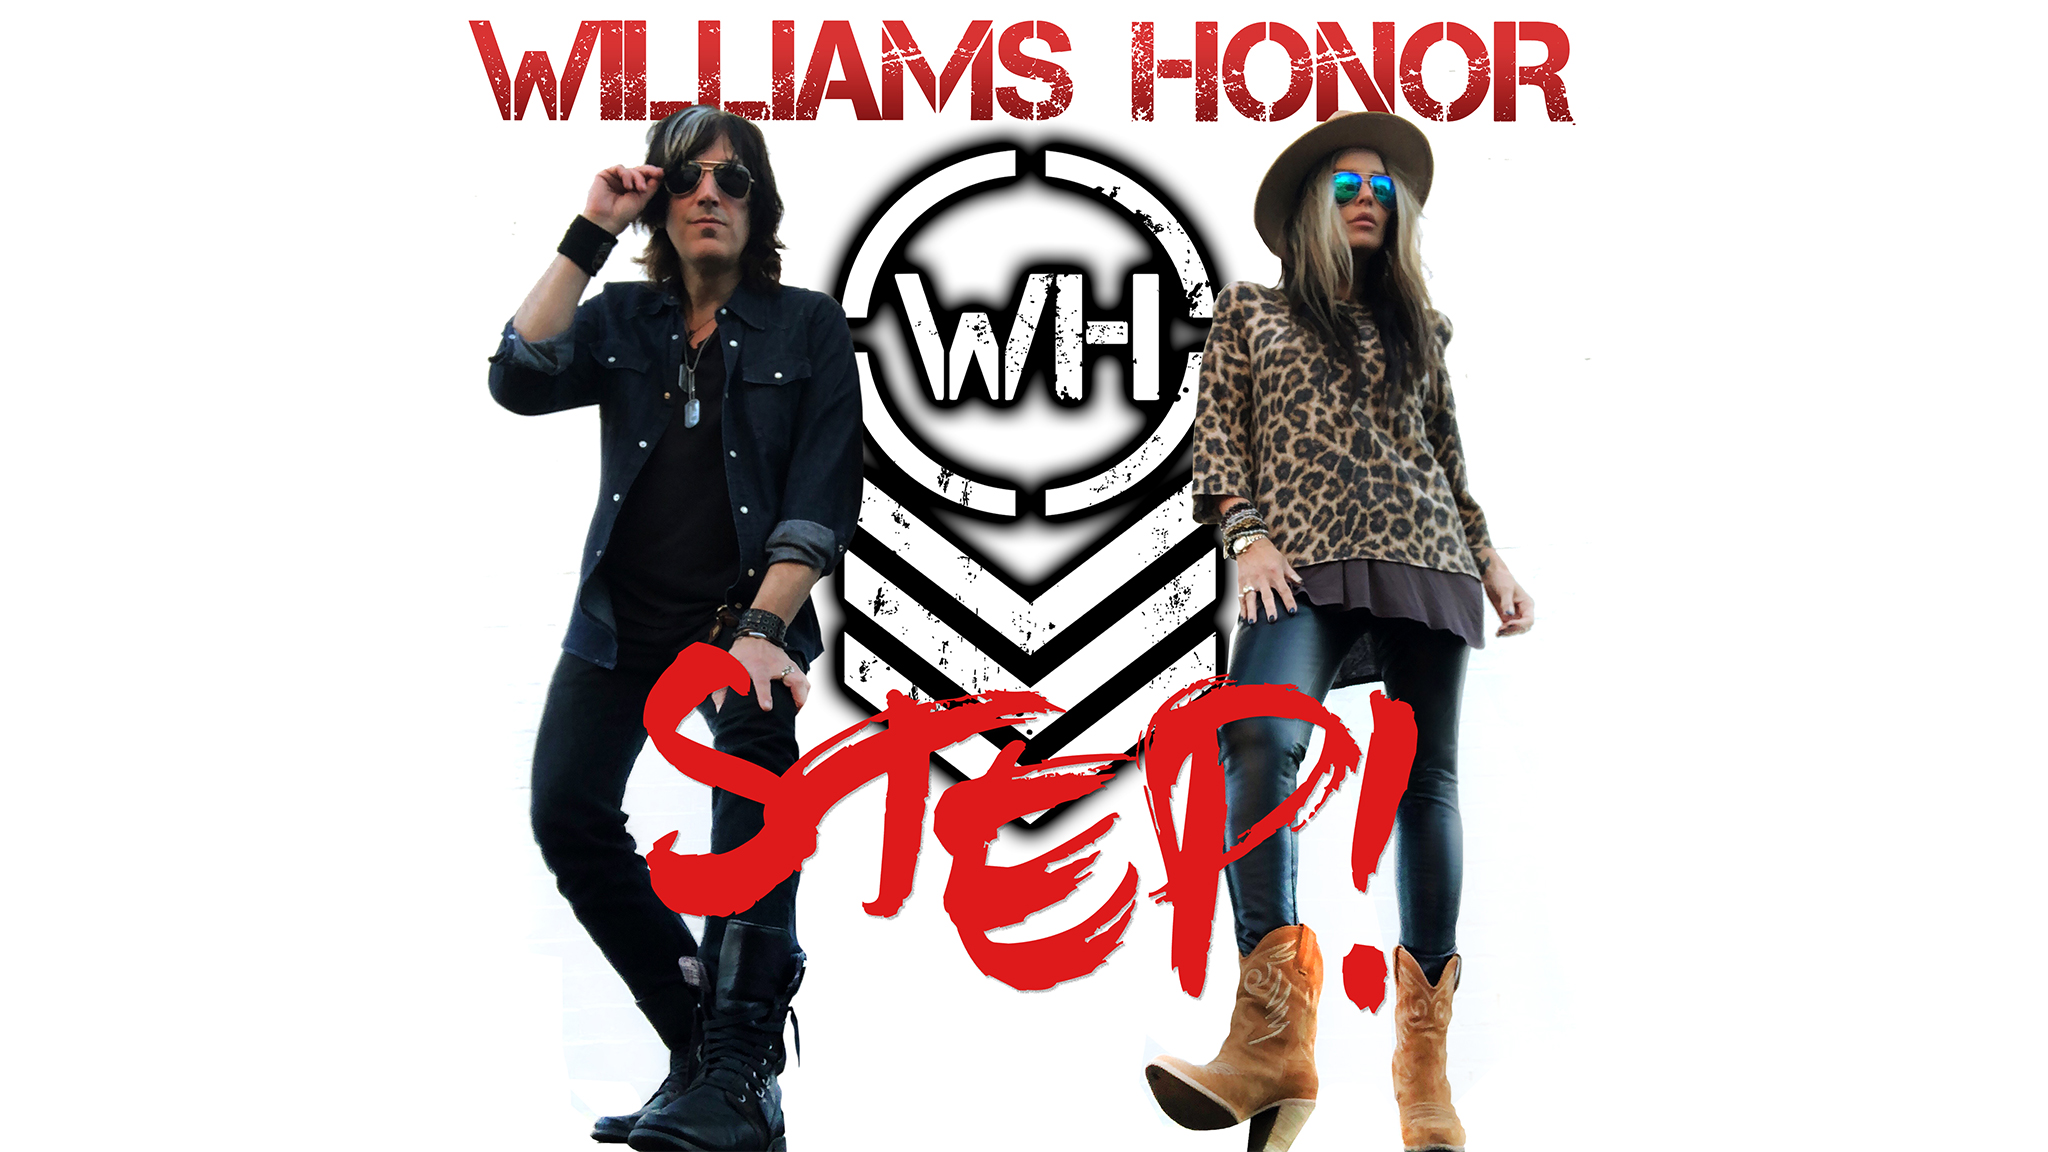 Williams Honor